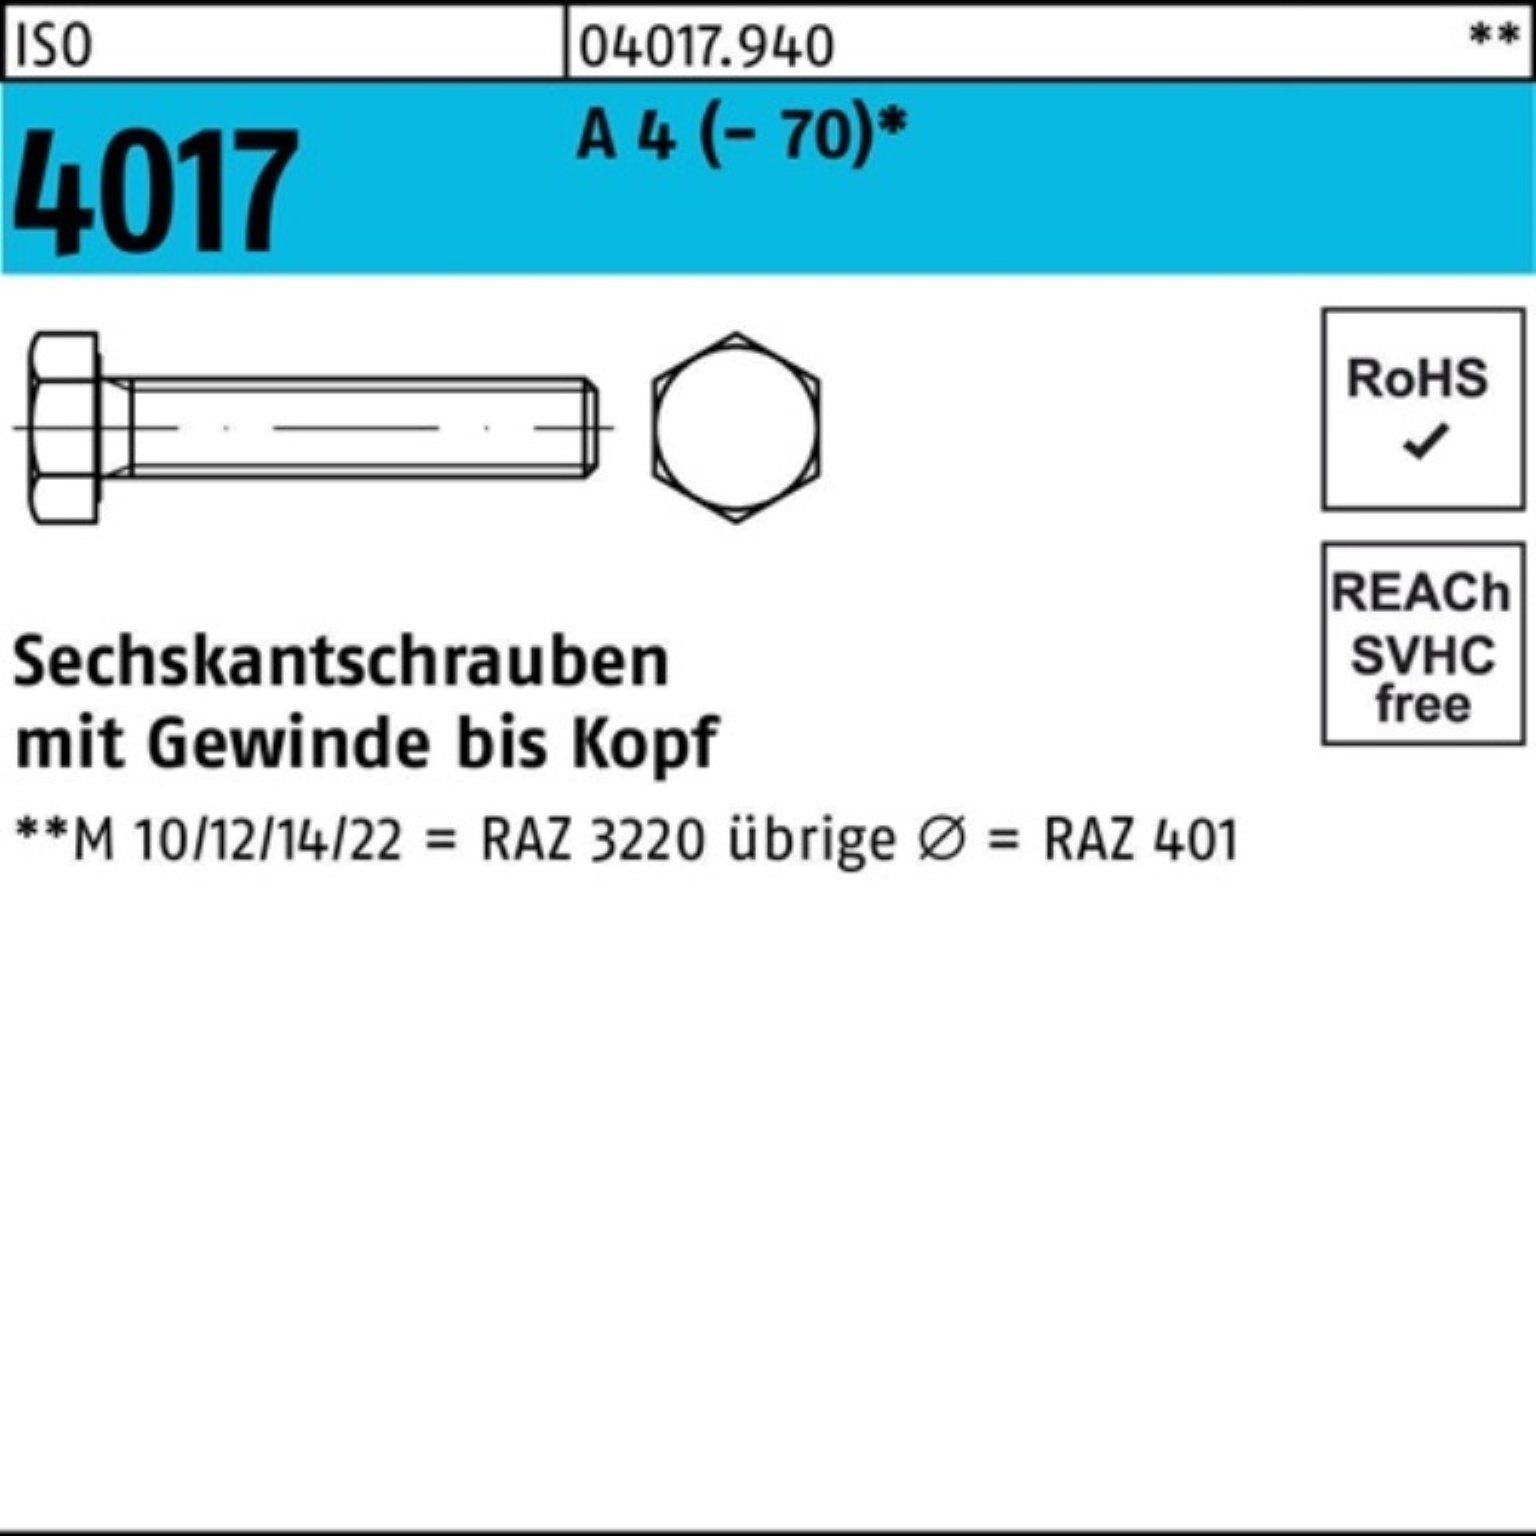 Bufab Sechskantschraube 100er Pack Sechskantschraube ISO 4017 VG M12x 130 A 4 (70) 1 Stück